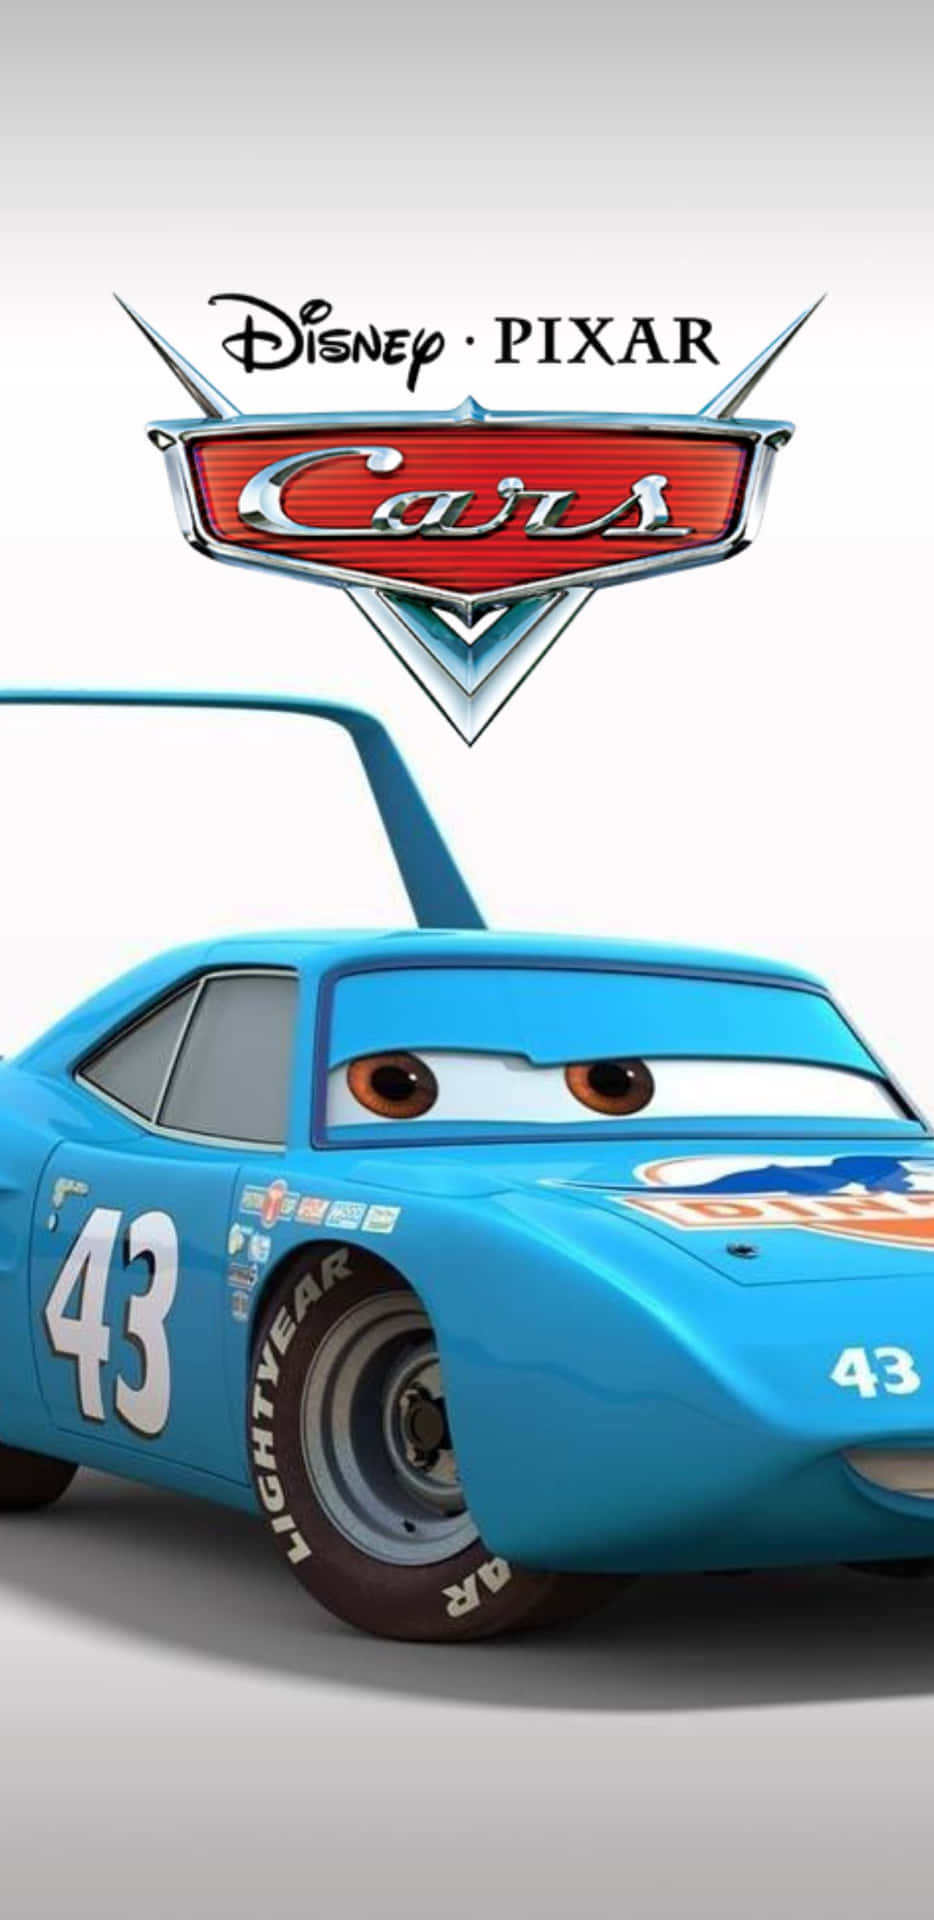 Disneypixar Cars - Cars De Pixar